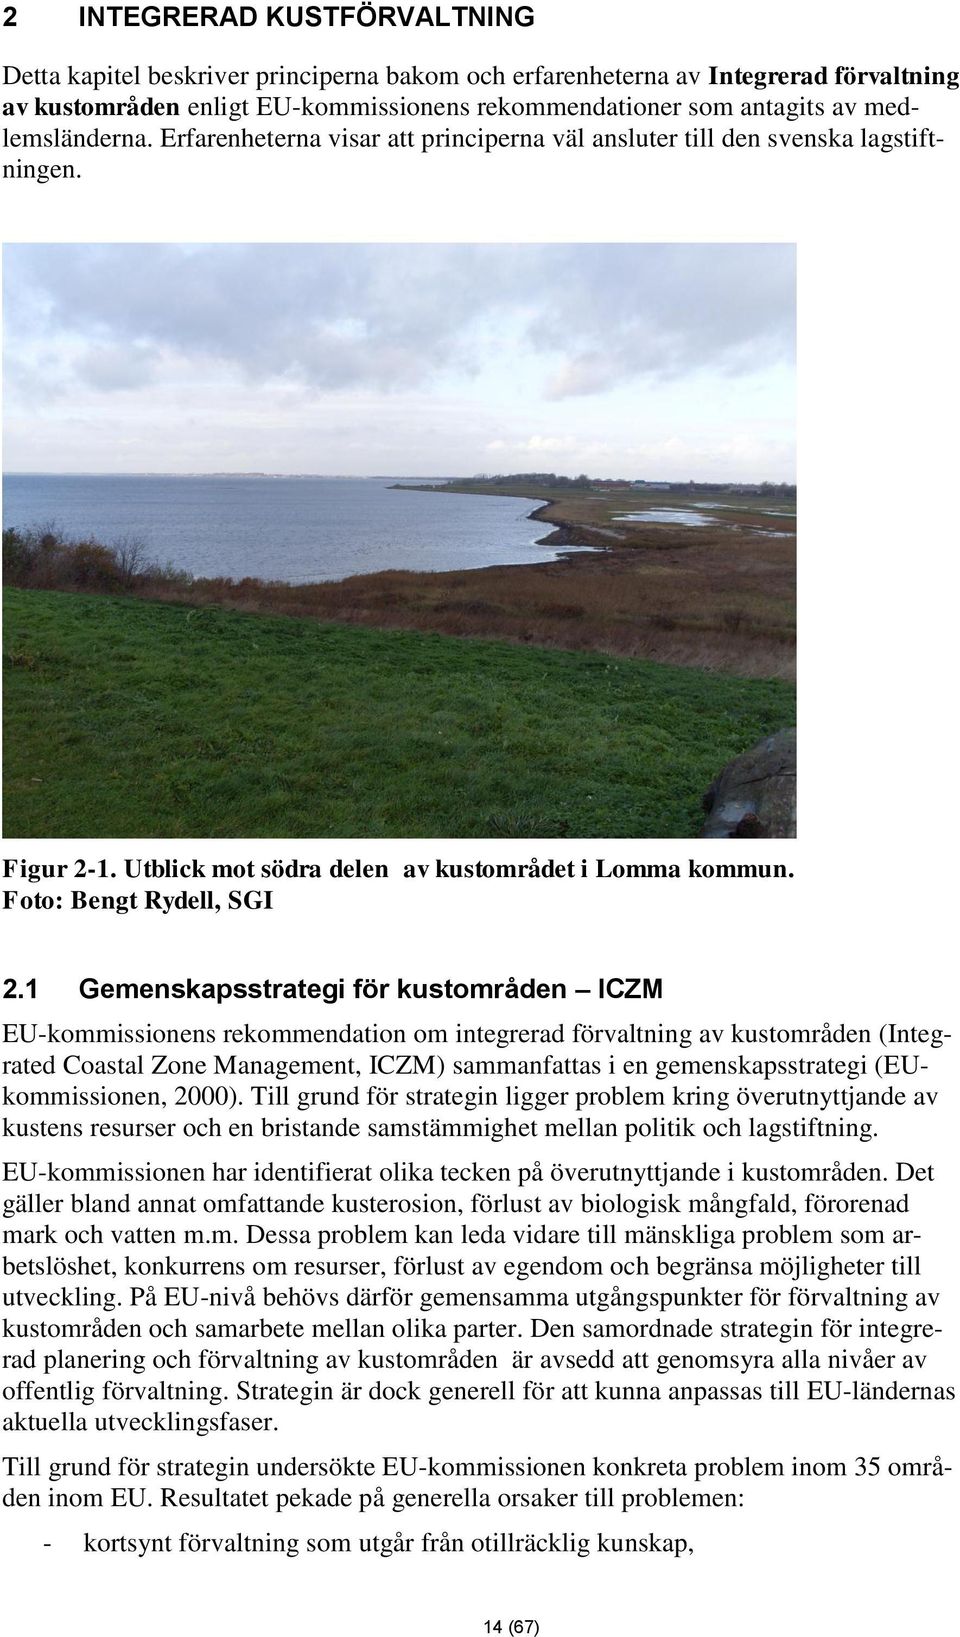 1 Gemenskapsstrategi för kustområden ICZM EU-kommissionens rekommendation om integrerad förvaltning av kustområden (Integrated Coastal Zone Management, ICZM) sammanfattas i en gemenskapsstrategi